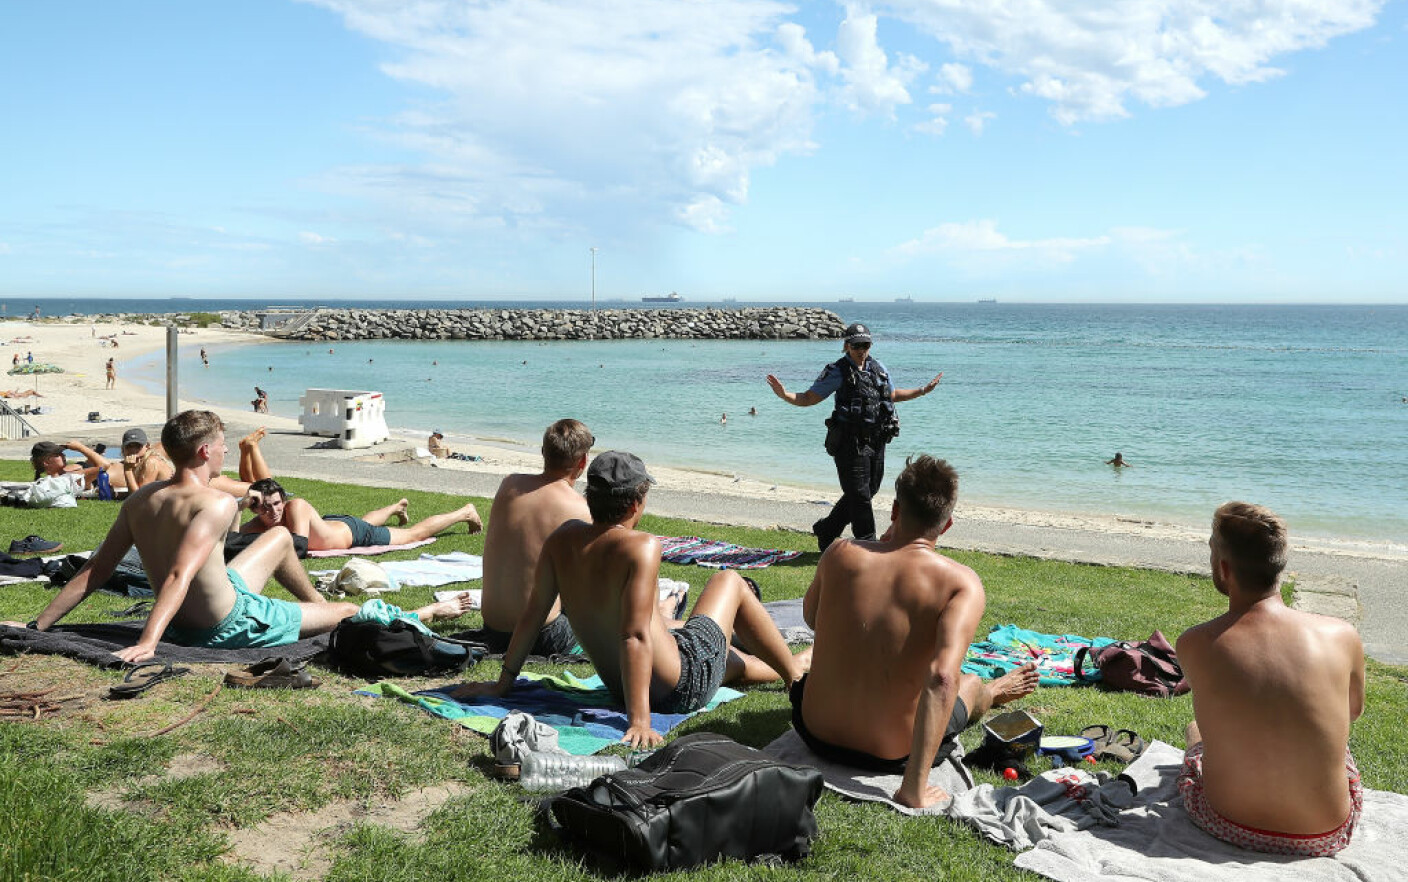 Australia ar putea deporta turiștii care încalcă regulile Covid și îi acuză de ”acte ticăloase”